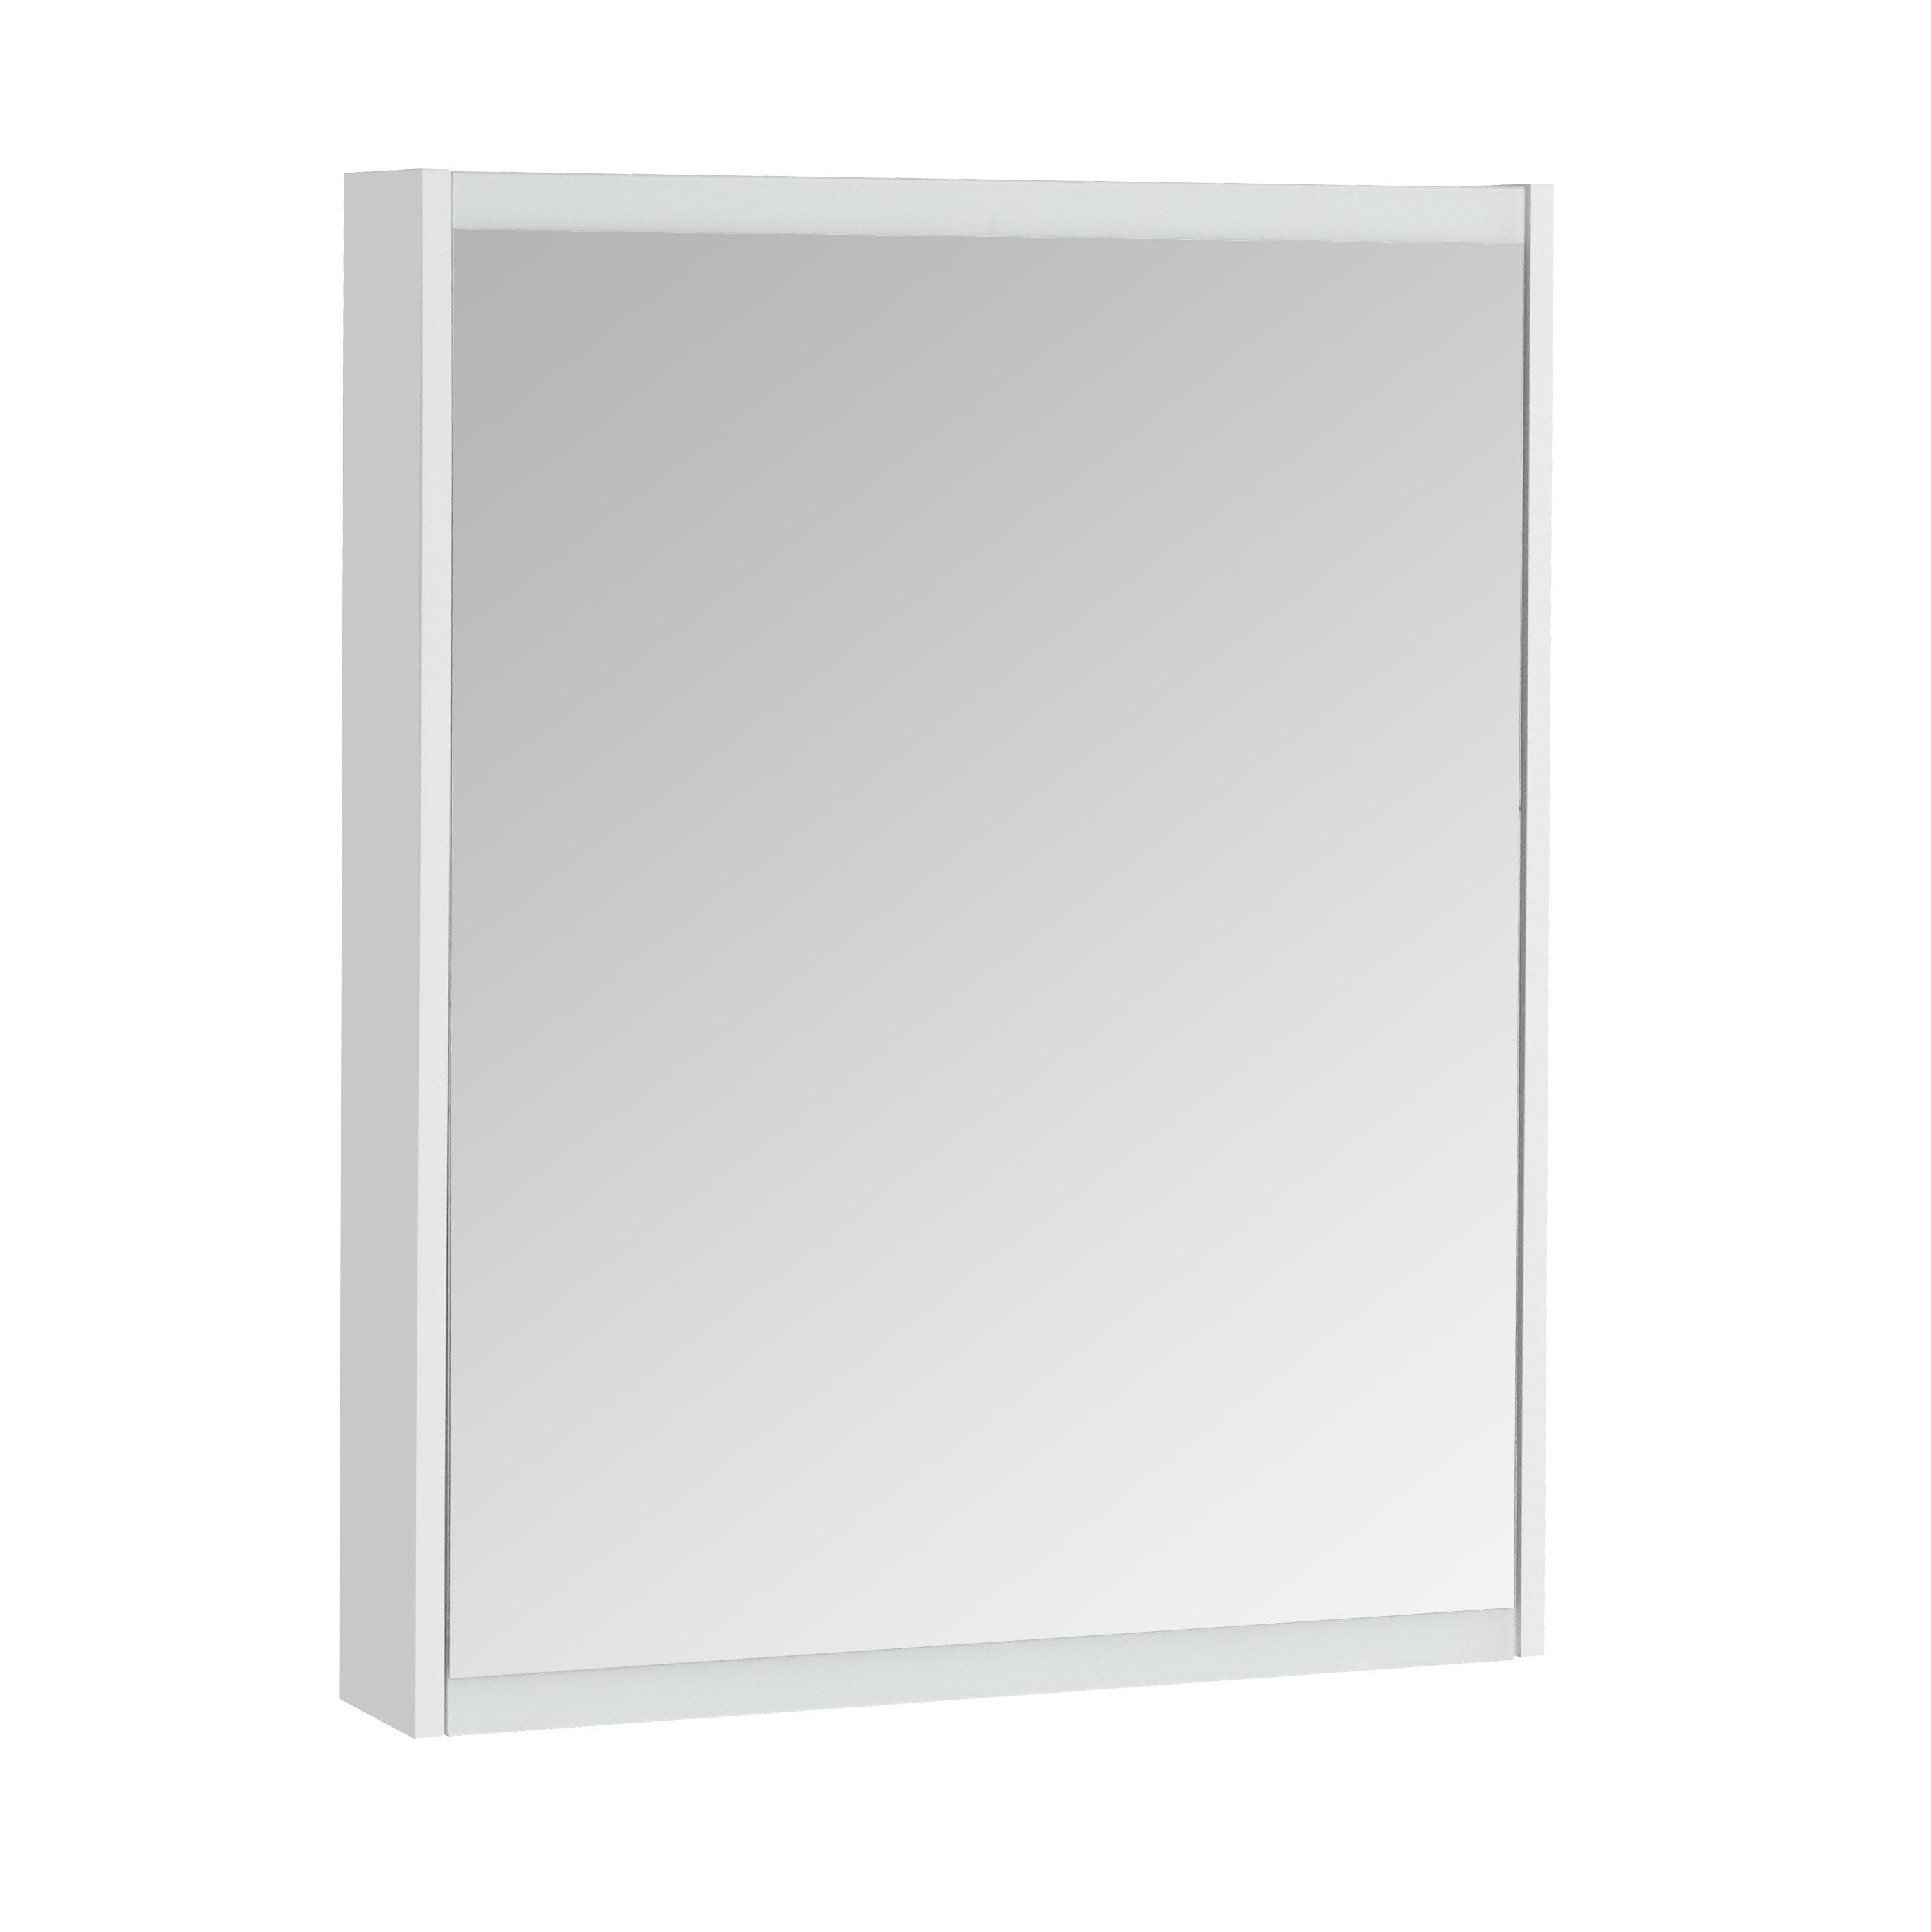 Зеркальный шкаф Акватон Нортон 65 белый 1A249102NT010